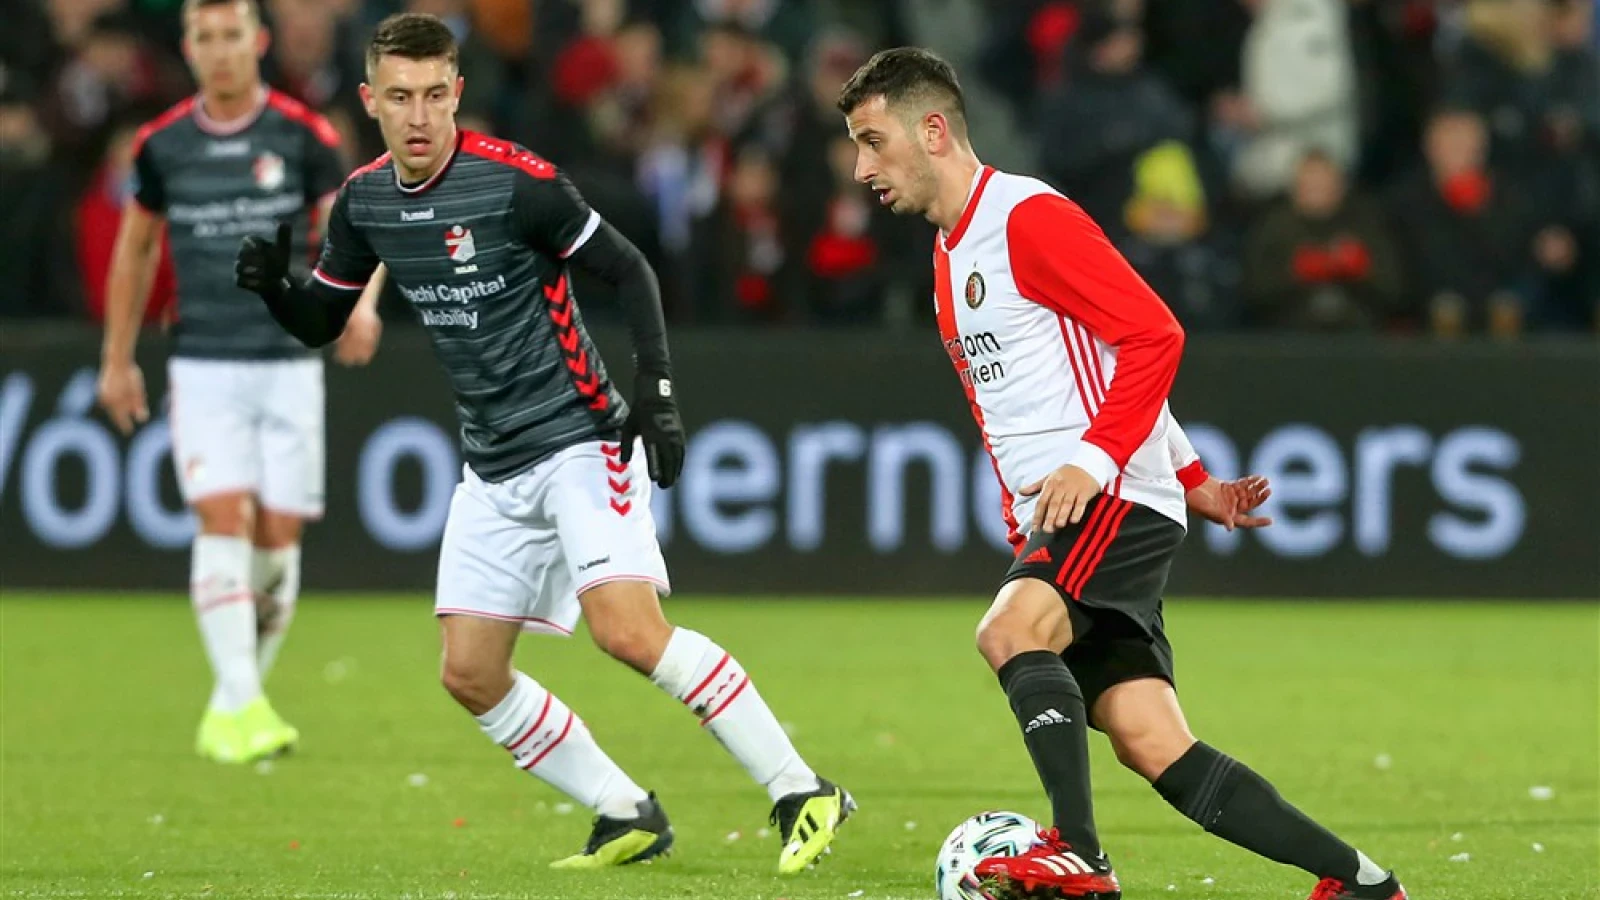 LIVE | Feyenoord - FC Emmen 3-0 | Einde wedstrijd